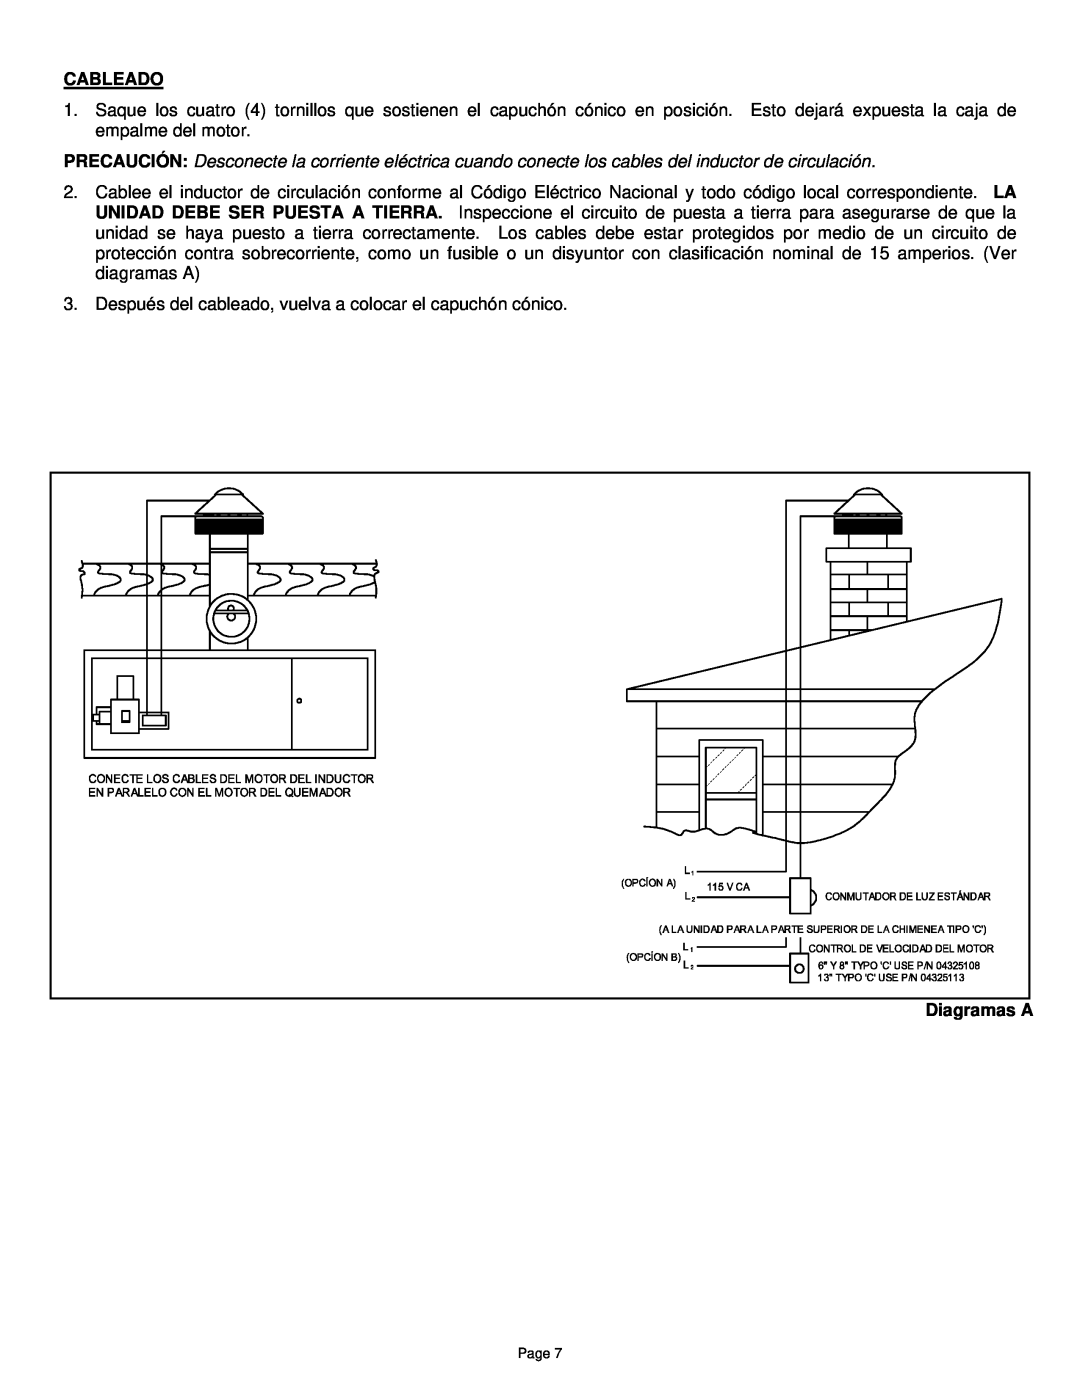 Field Controls TYPE "C manual Cableado, Diagramas A 